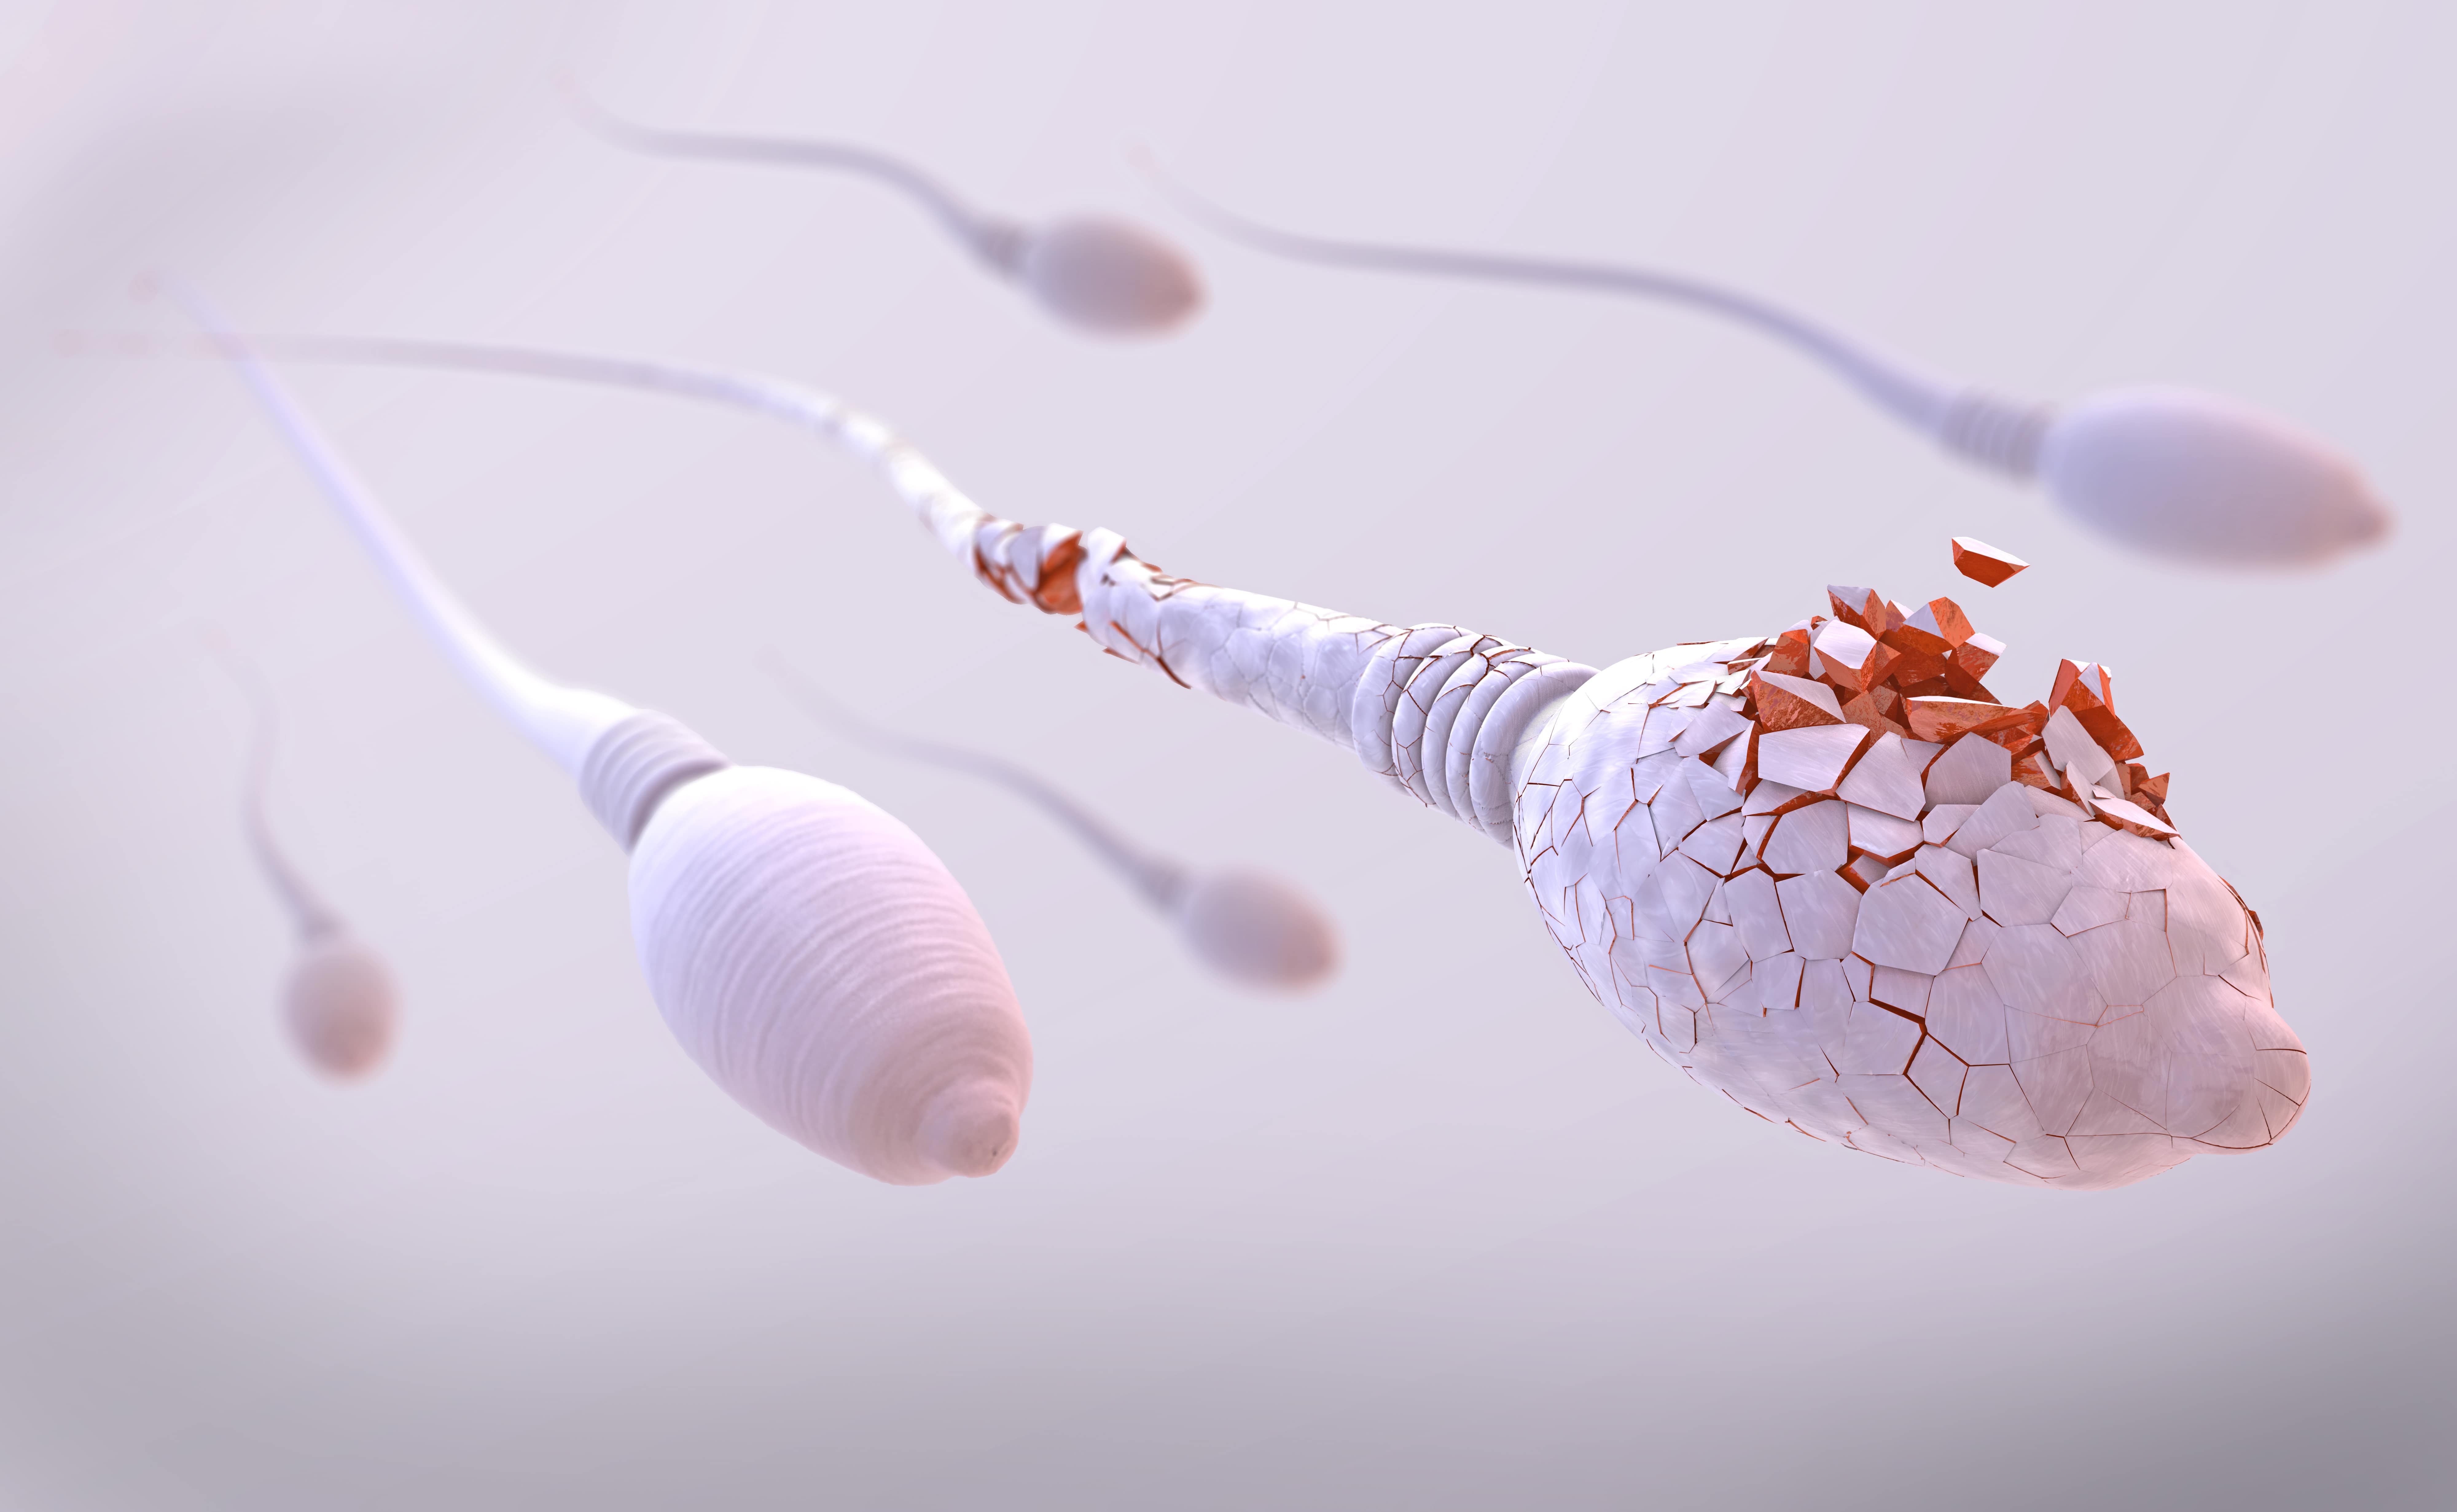 « La concentration en spermatozoïdes a sensiblement diminué entre 1973 et 2018 », selon cette nouvelle étude. © Christoph Burgstedt, Adobe Stock